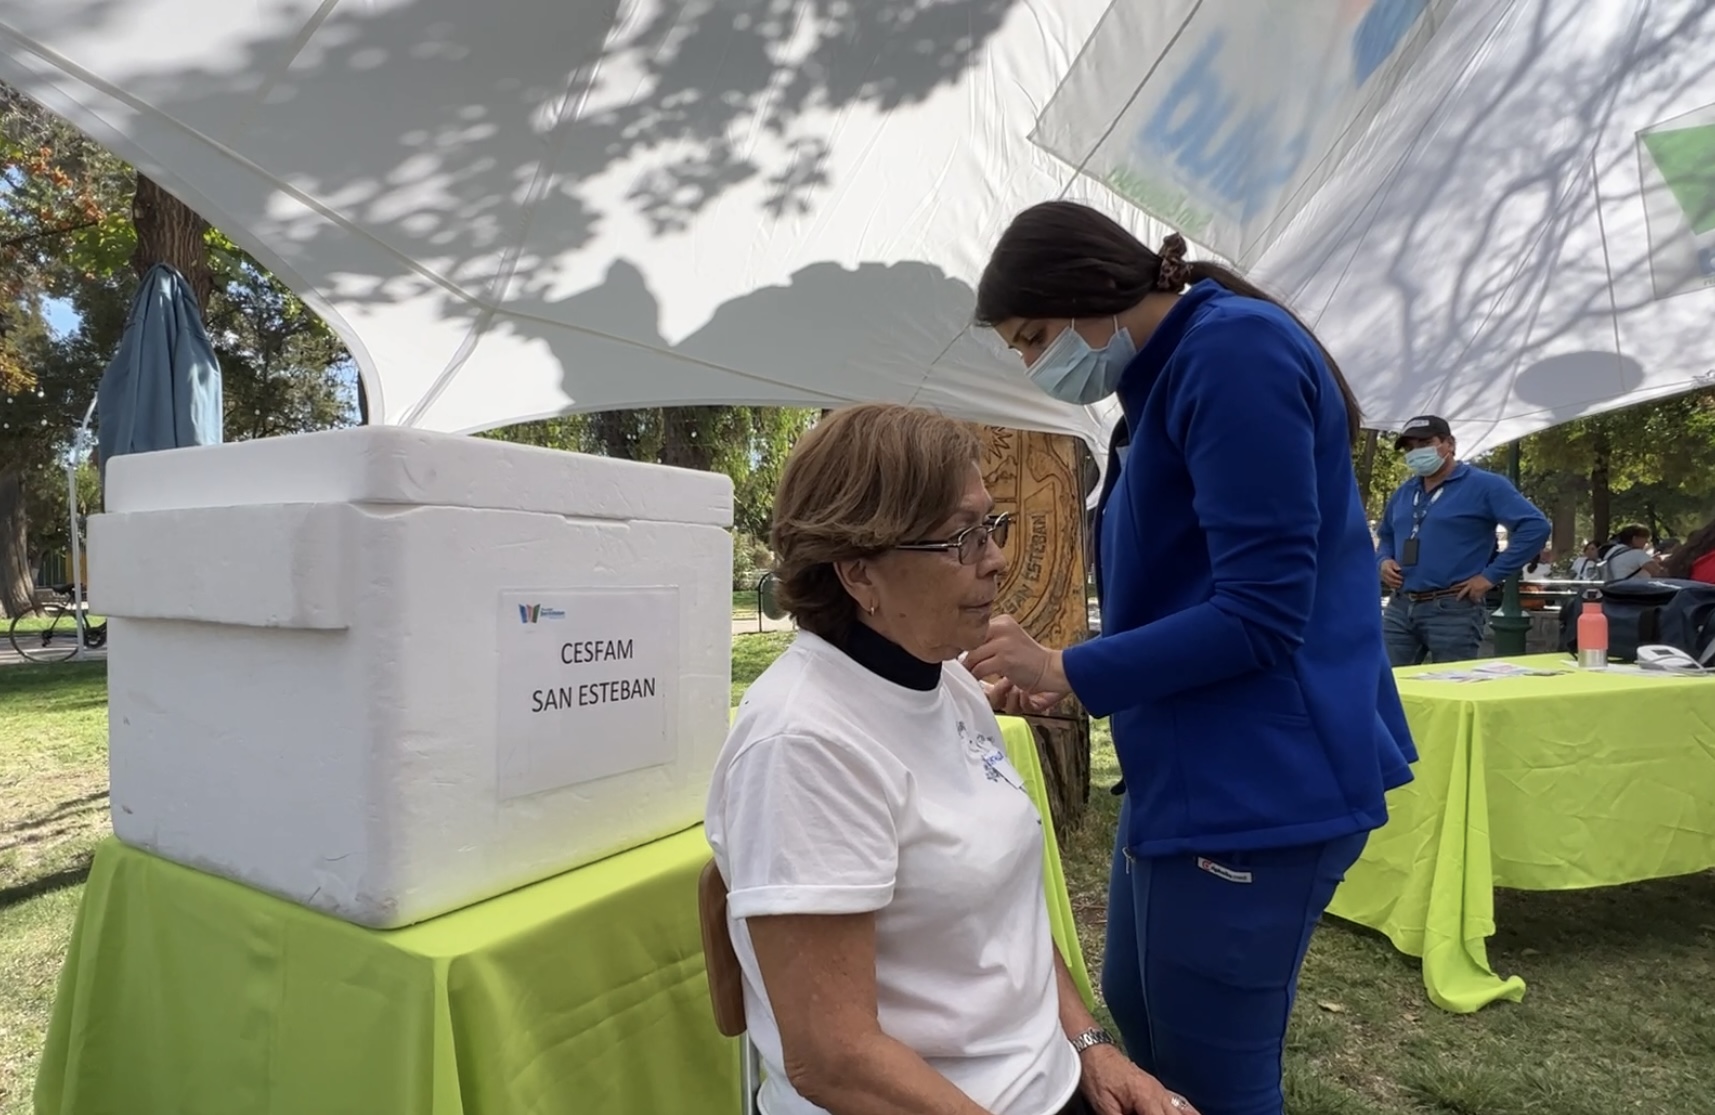 SAN ESTEBAN: Recorriendo distintos sectores de la comuna, Departamento de Salud de San Esteban potenció su estrategia de vacunación contra la influenza y COVID